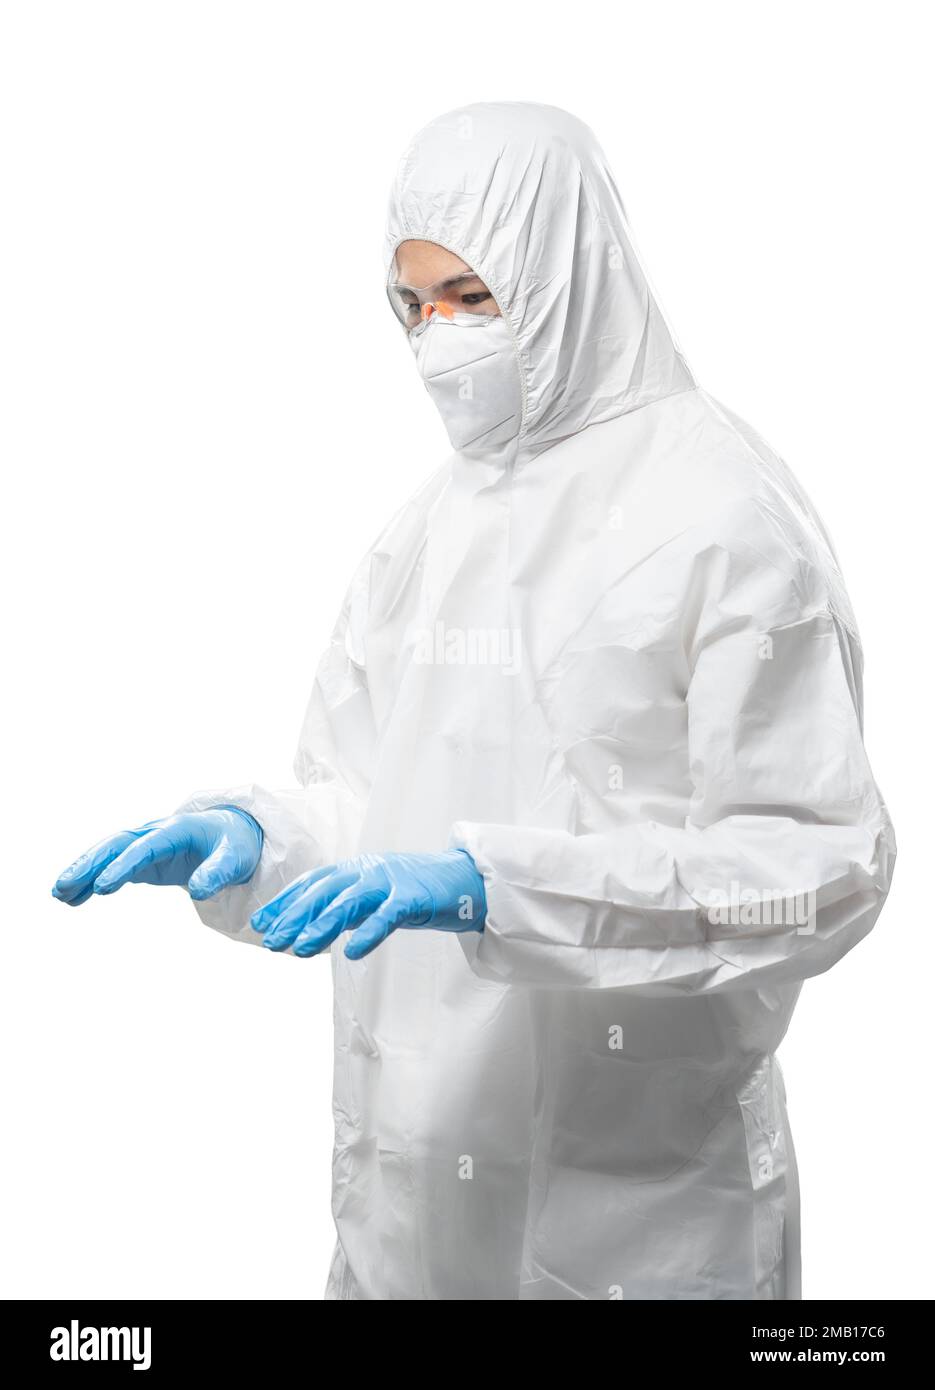 Arbeiter trägt medizinischen Schutzanzug oder weißen Overall Anzug mit  Maske und Schutzbrille Leere Hand Typin isoliert auf weißem Hintergrund  Stockfotografie - Alamy